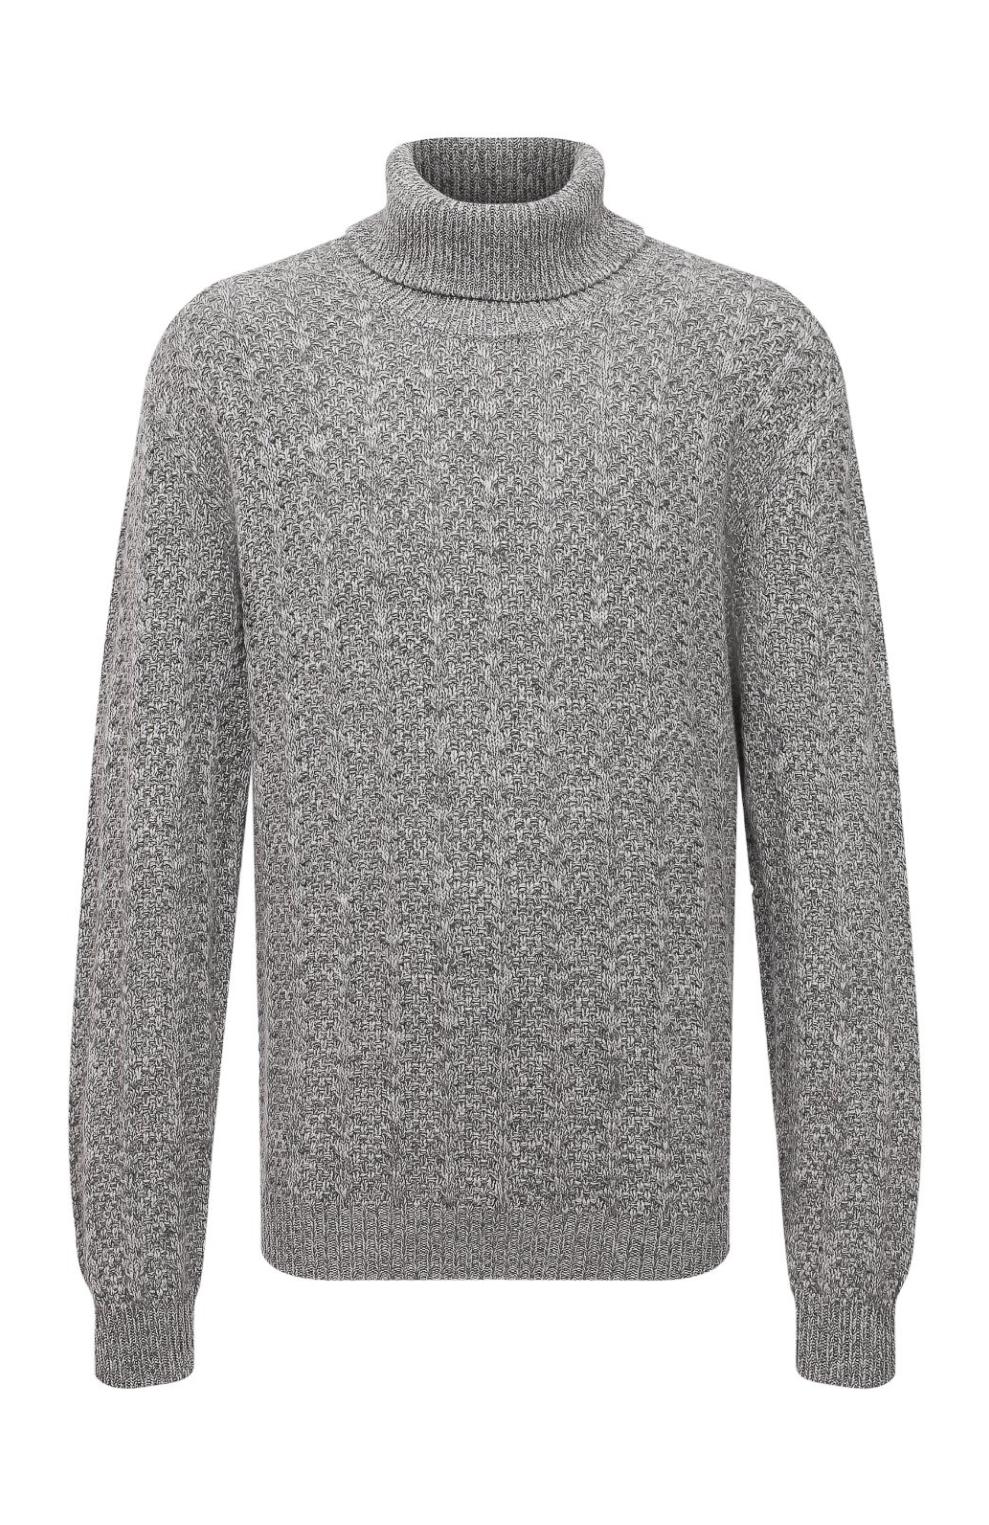 Кашемировый свитер, Kiton, 519 000 руб.